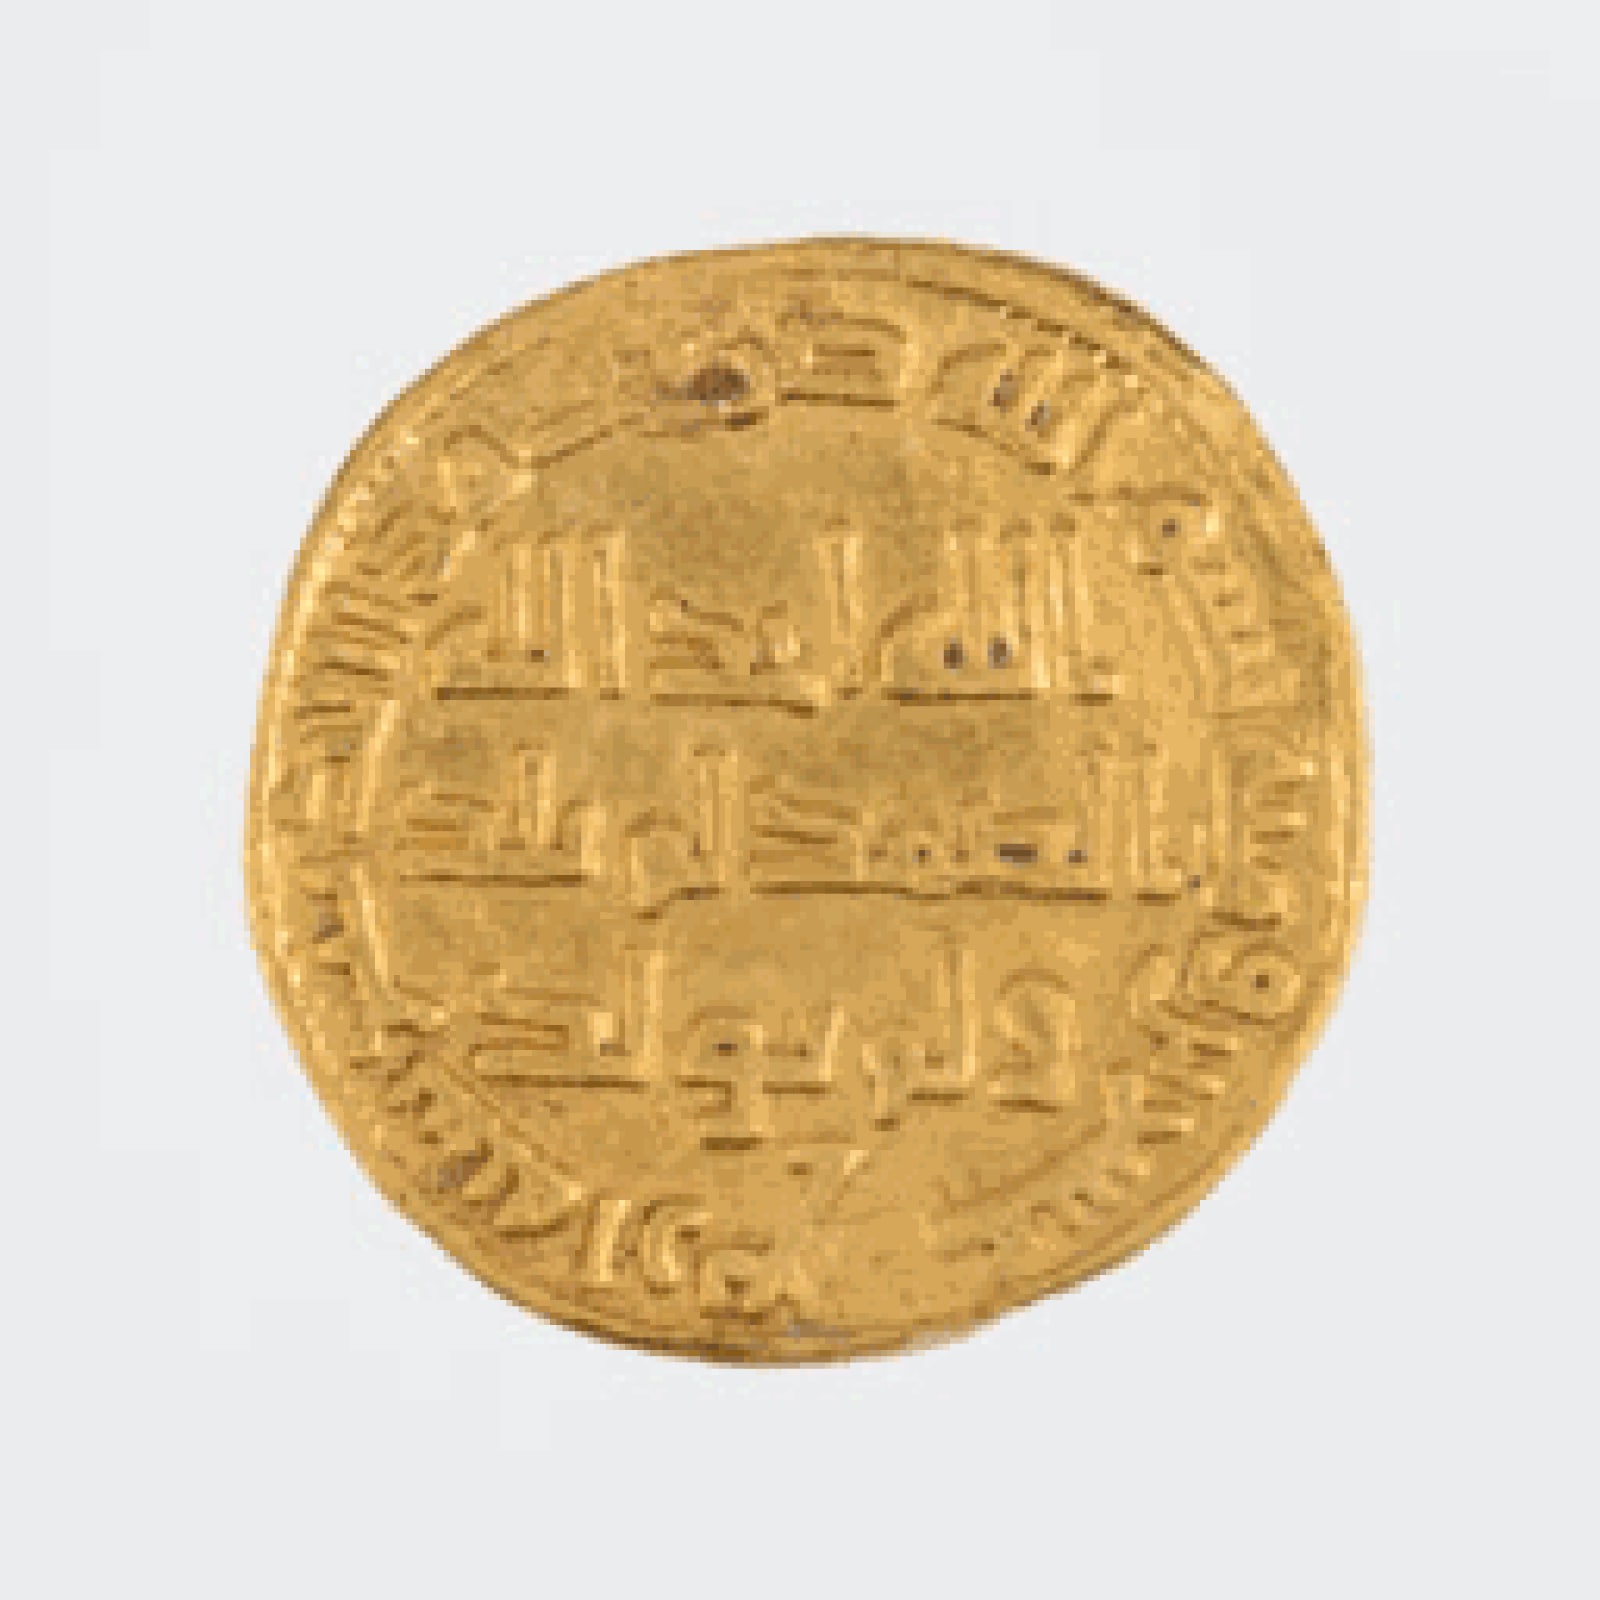 Gold dinar coin